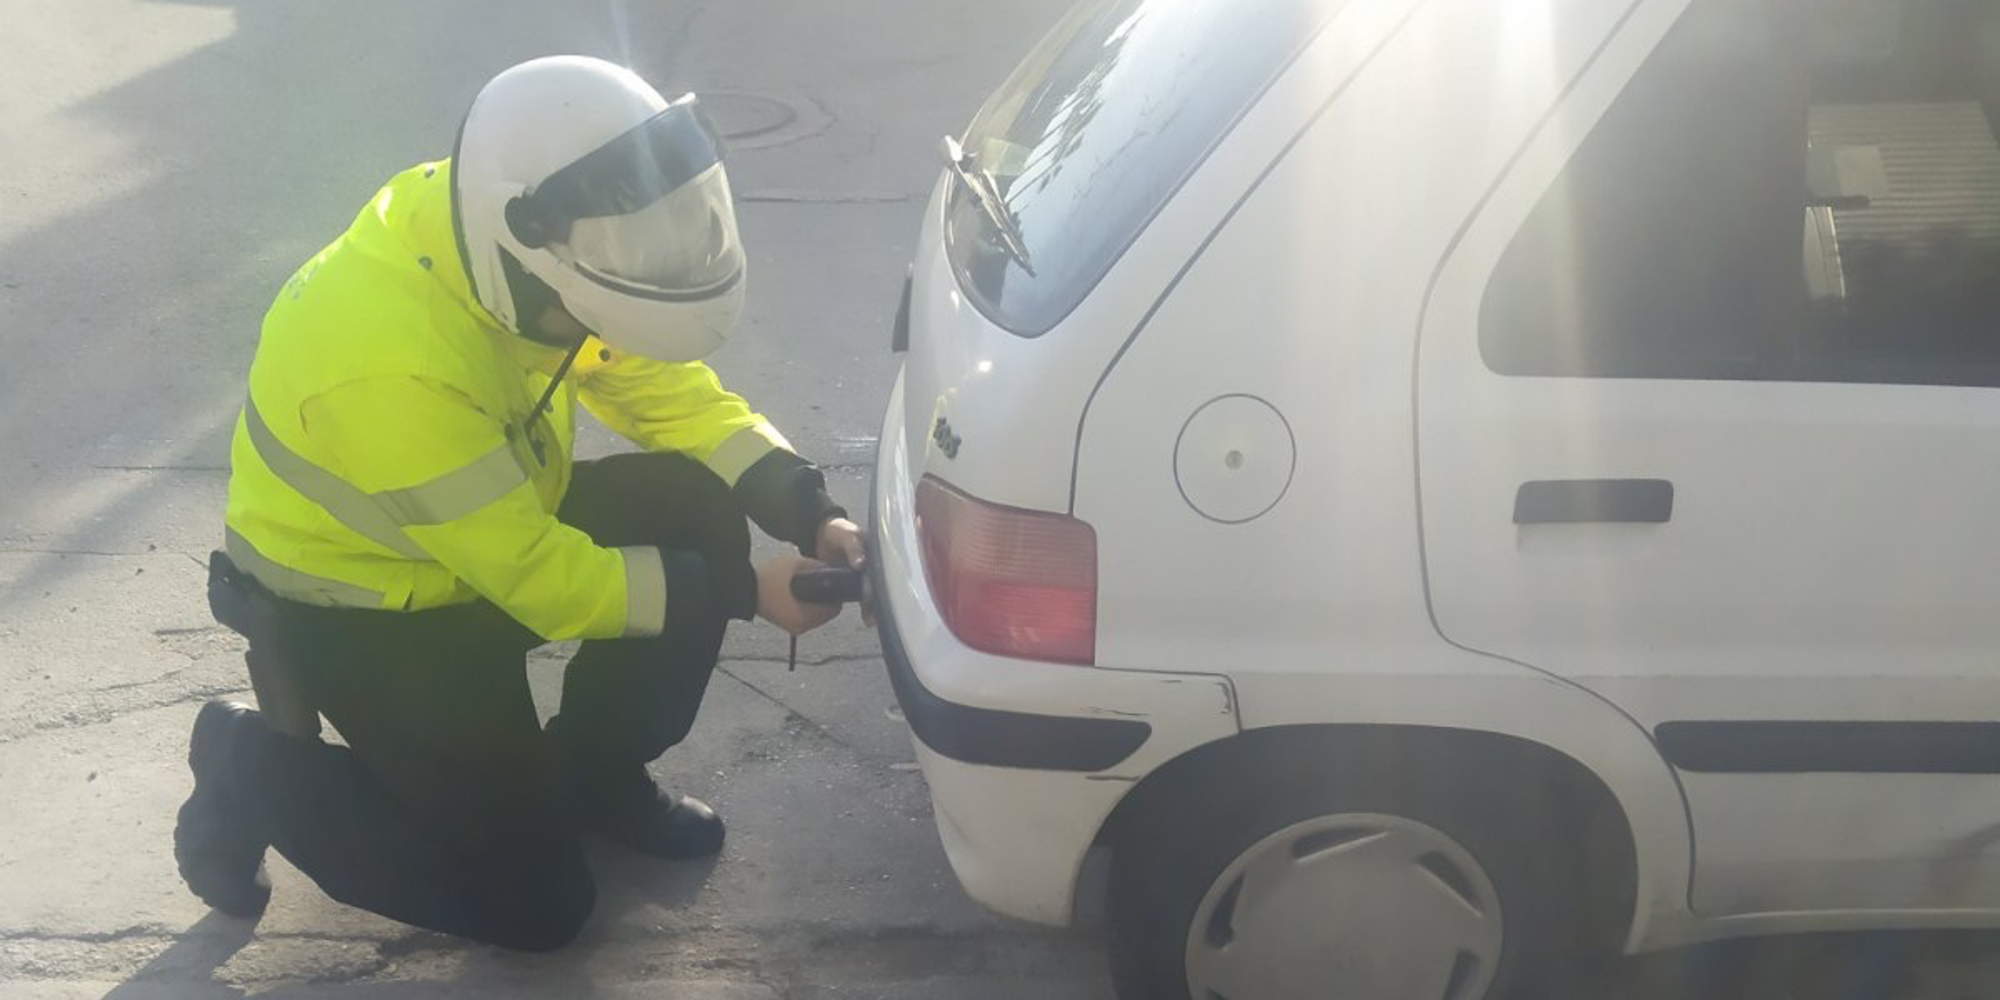 Αστυνομικός αφαιρεί πινακίδες από αυτοκίνητο παράνομα παρκαρισμένο